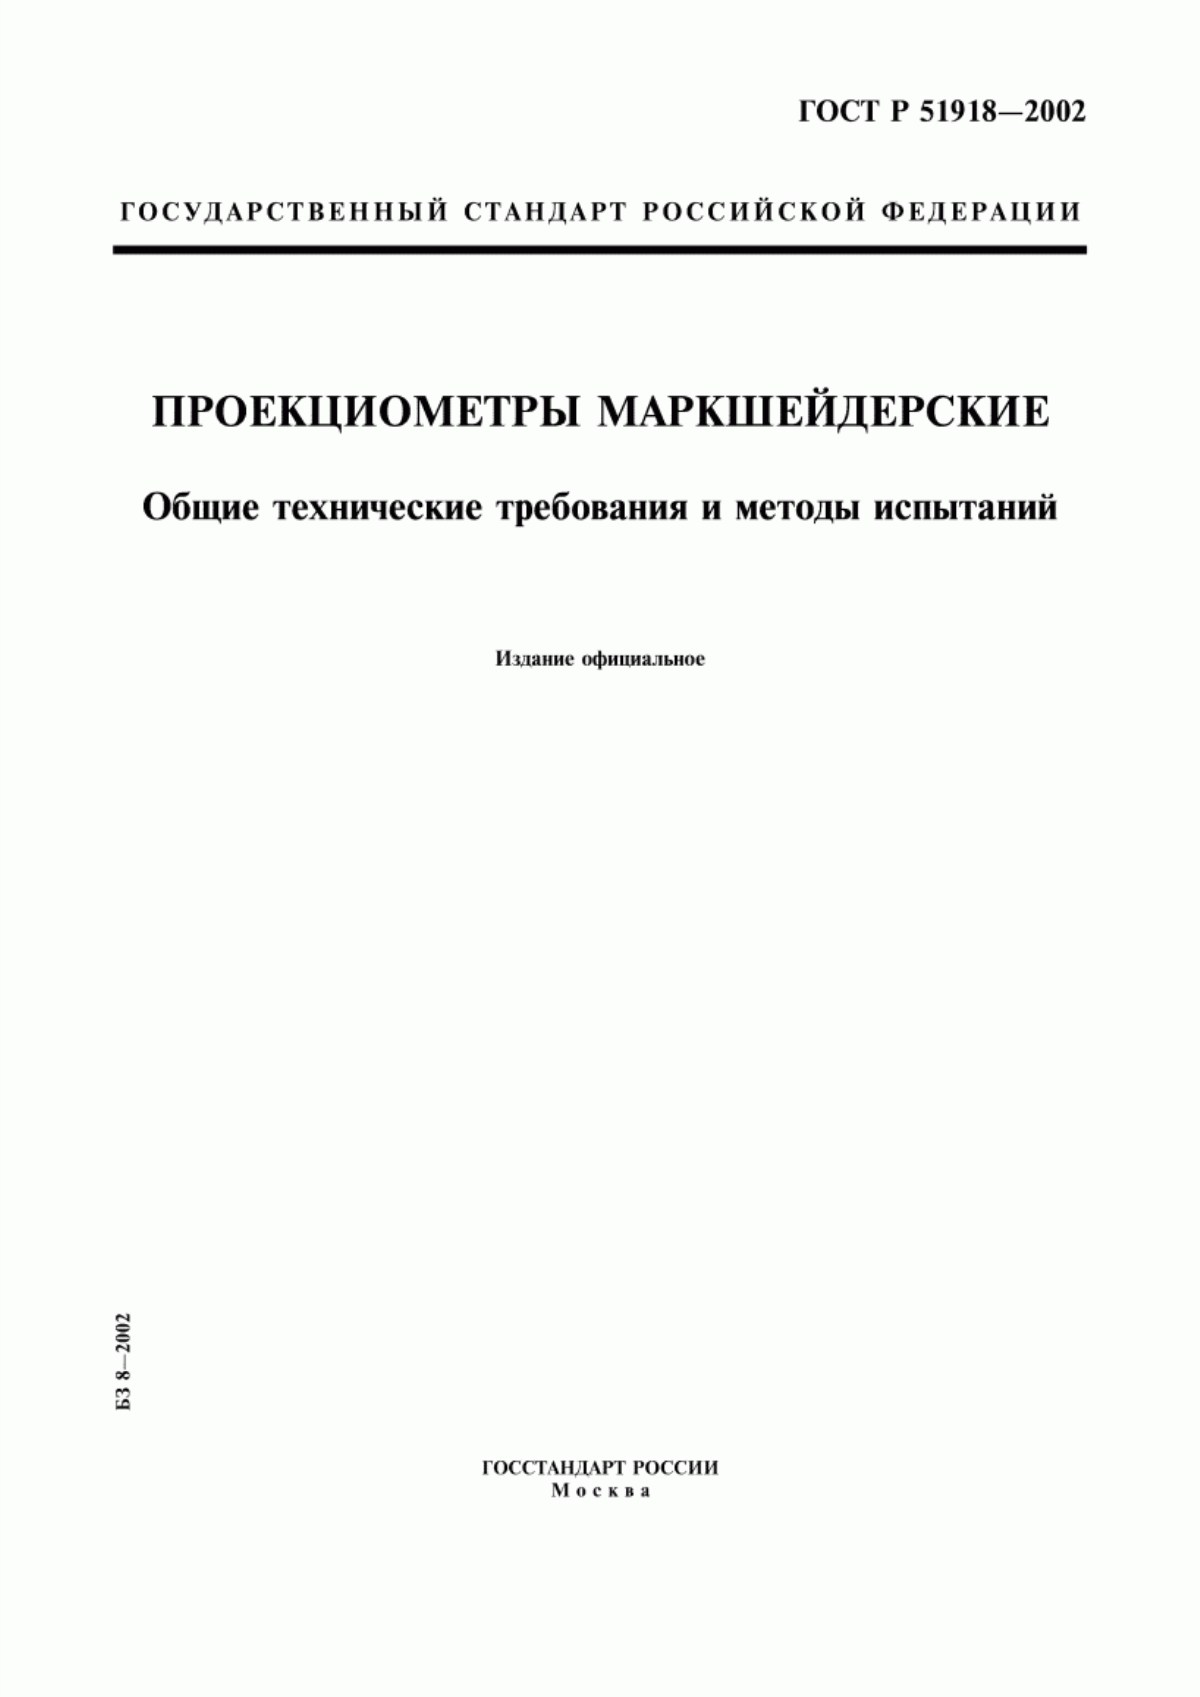 ГОСТ Р 51918-2002 Проекциометры маркшейдерские. Общие технические требования и методы испытаний